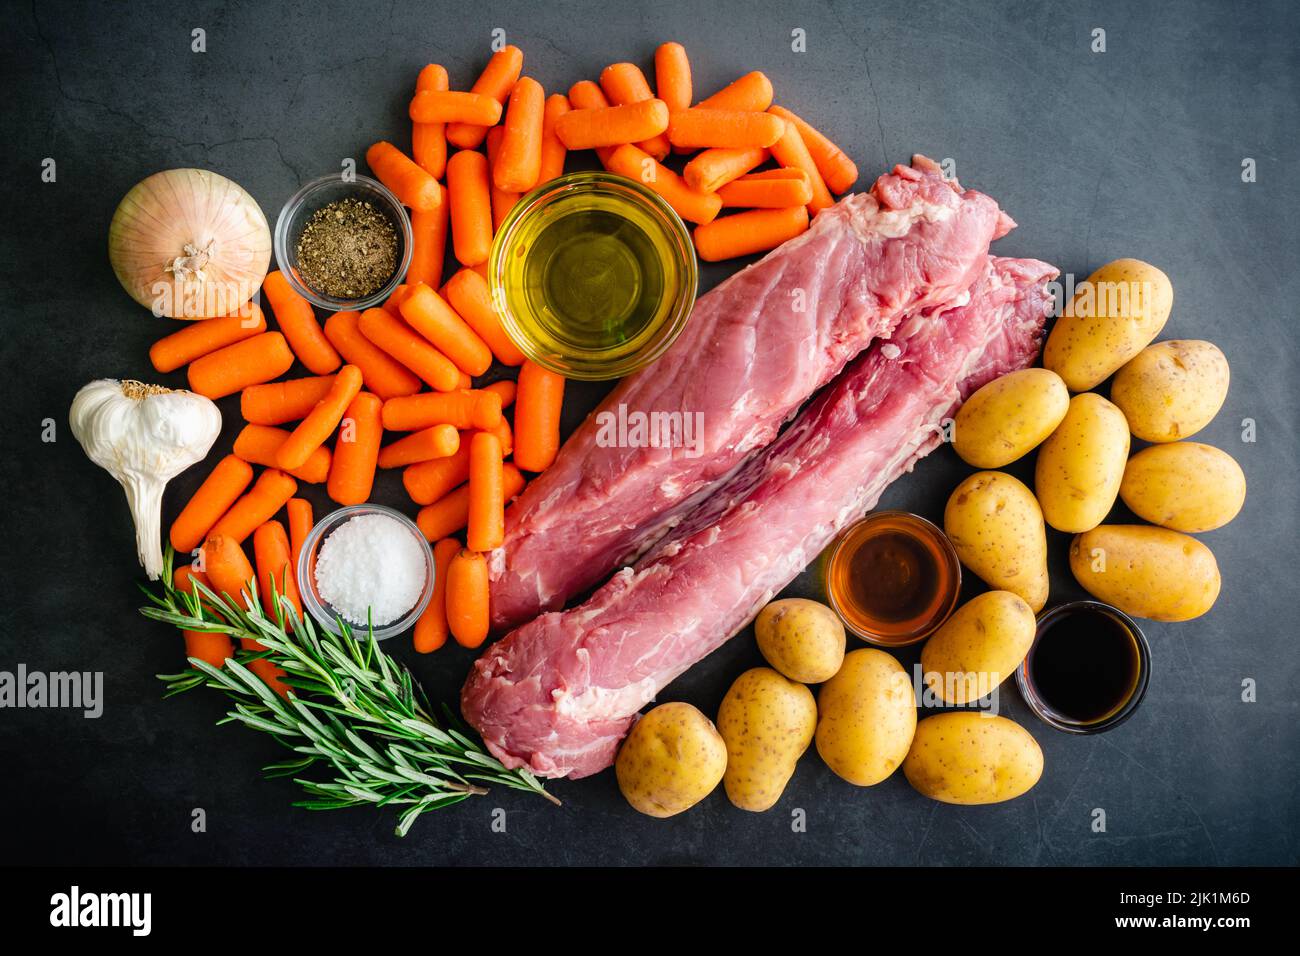 Schweinebraten-Tenderloin mit Kartoffeln und Baby-Karotte Zutaten: Rohes Schweinefilet, Babykartoffeln, frischer Rosmarin und andere Zutaten Stockfoto